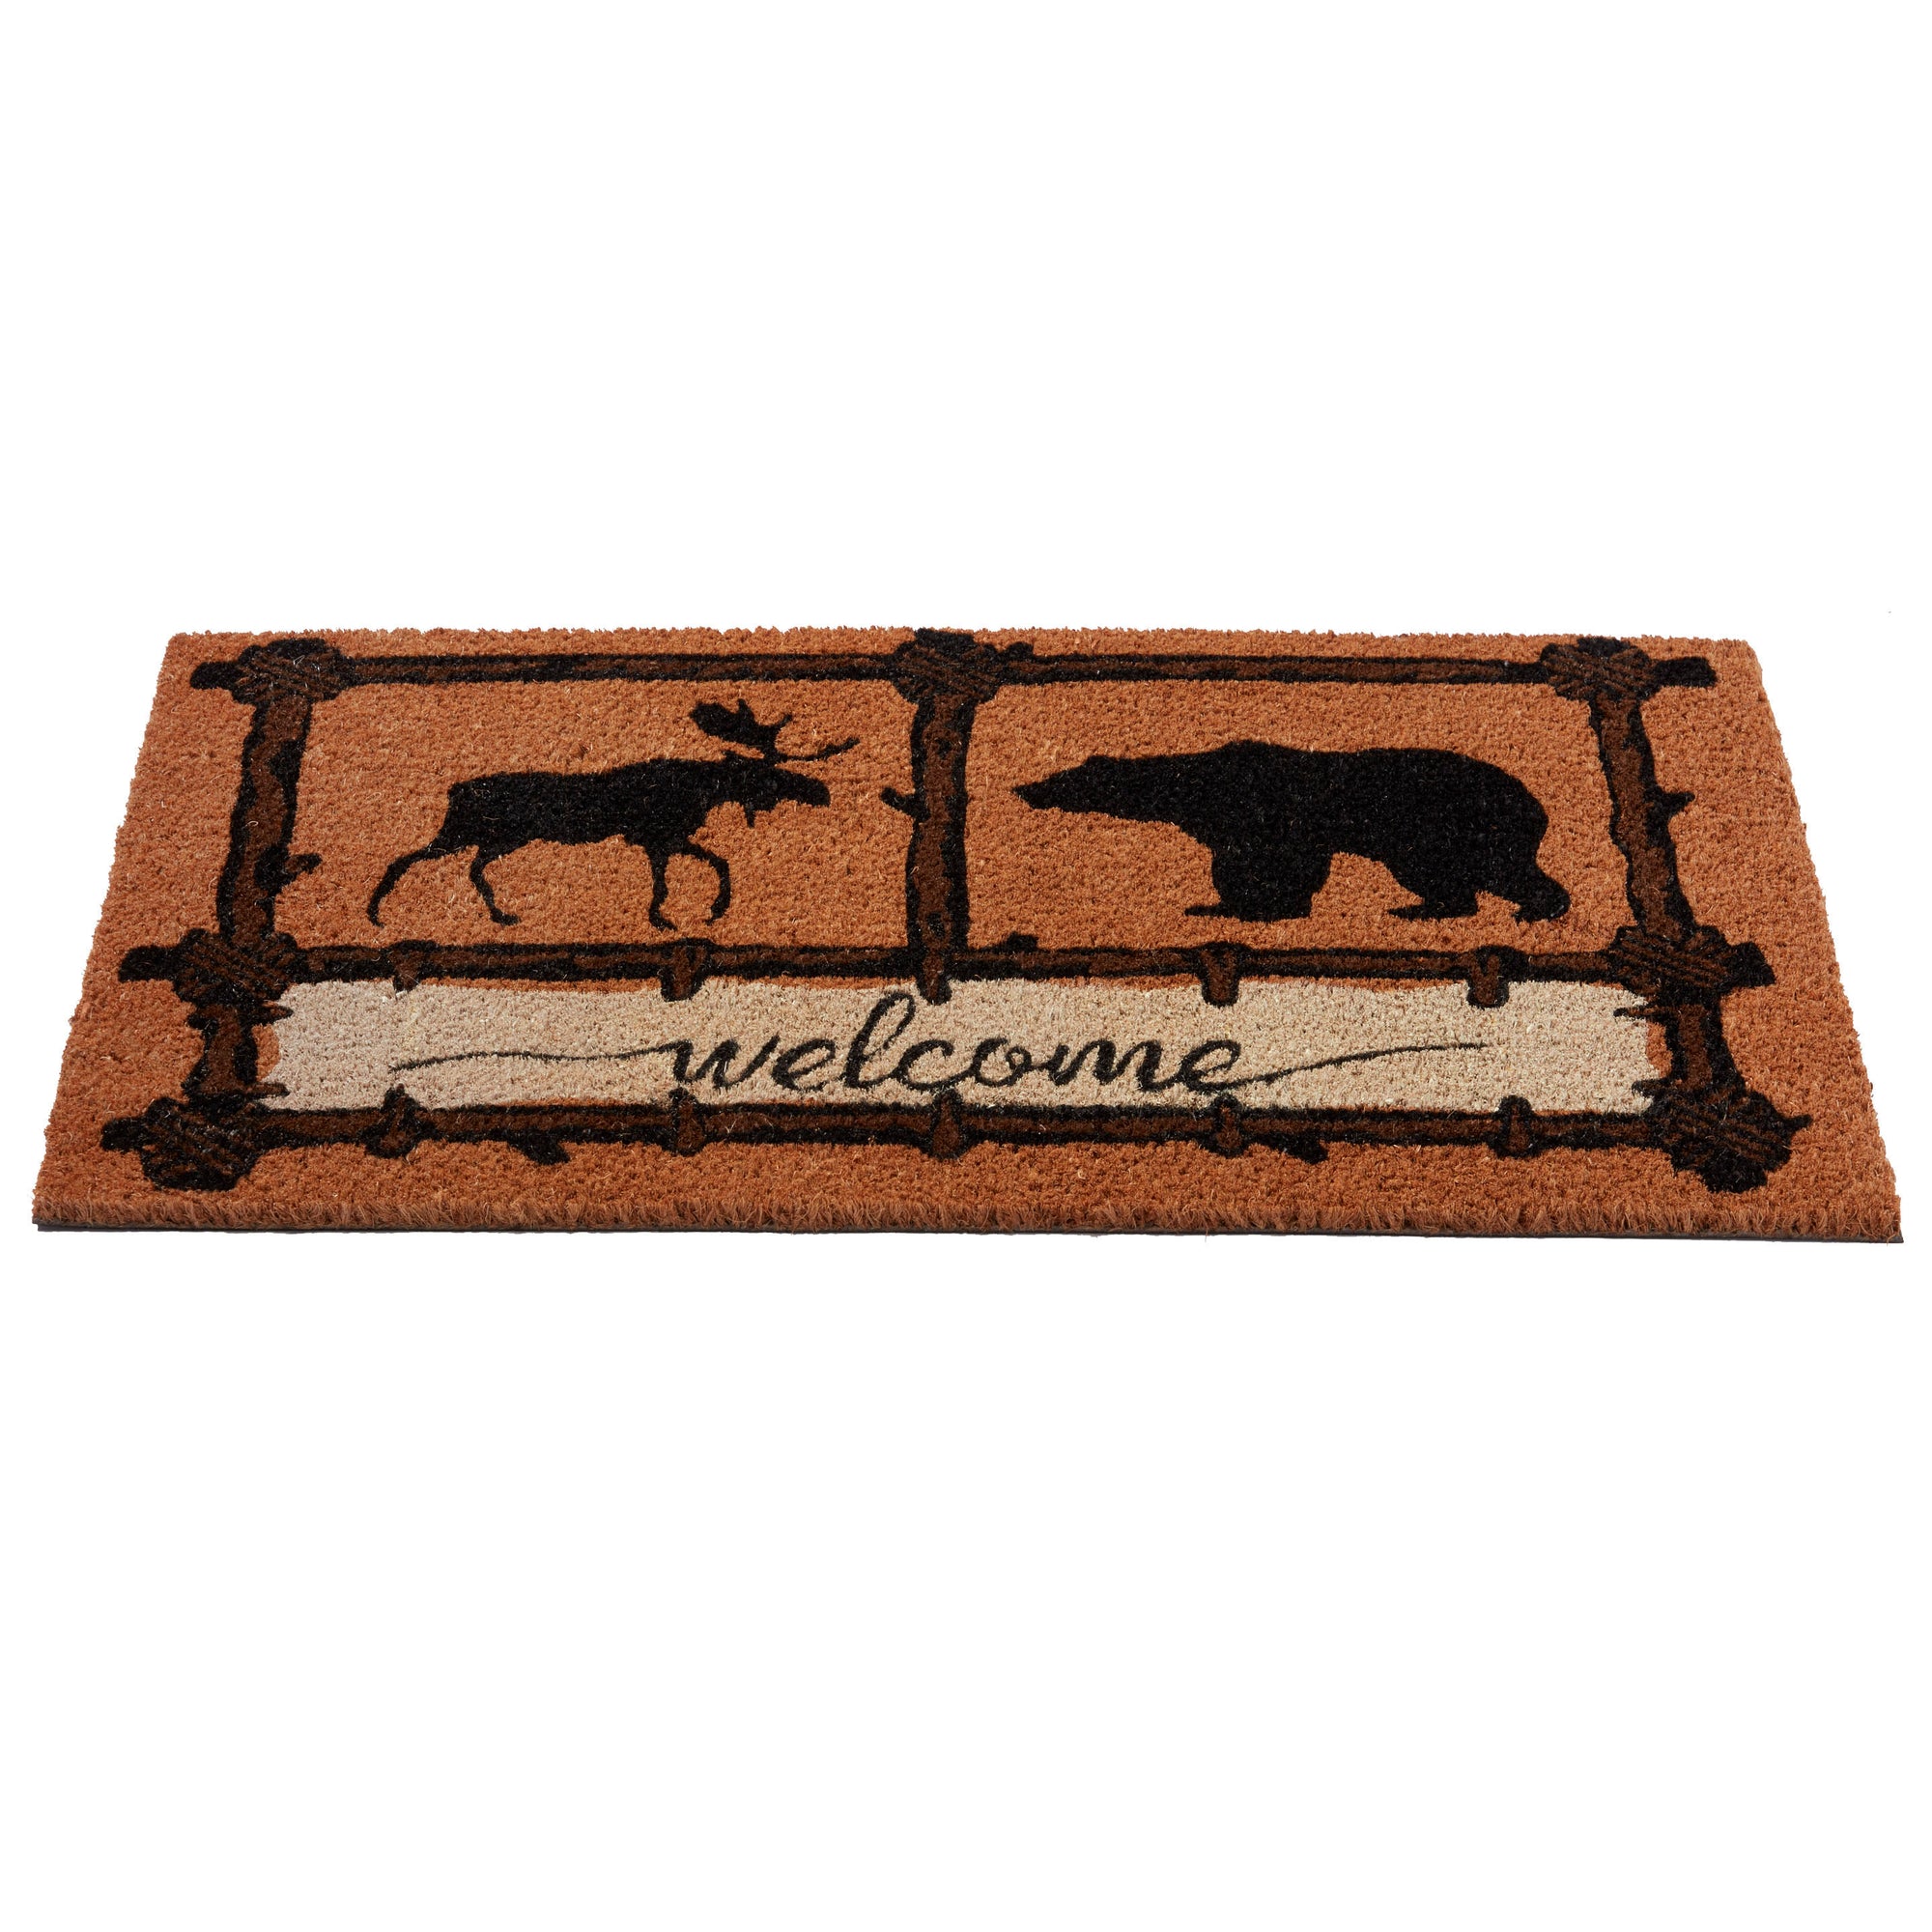 Northwoods Welcome Doormat